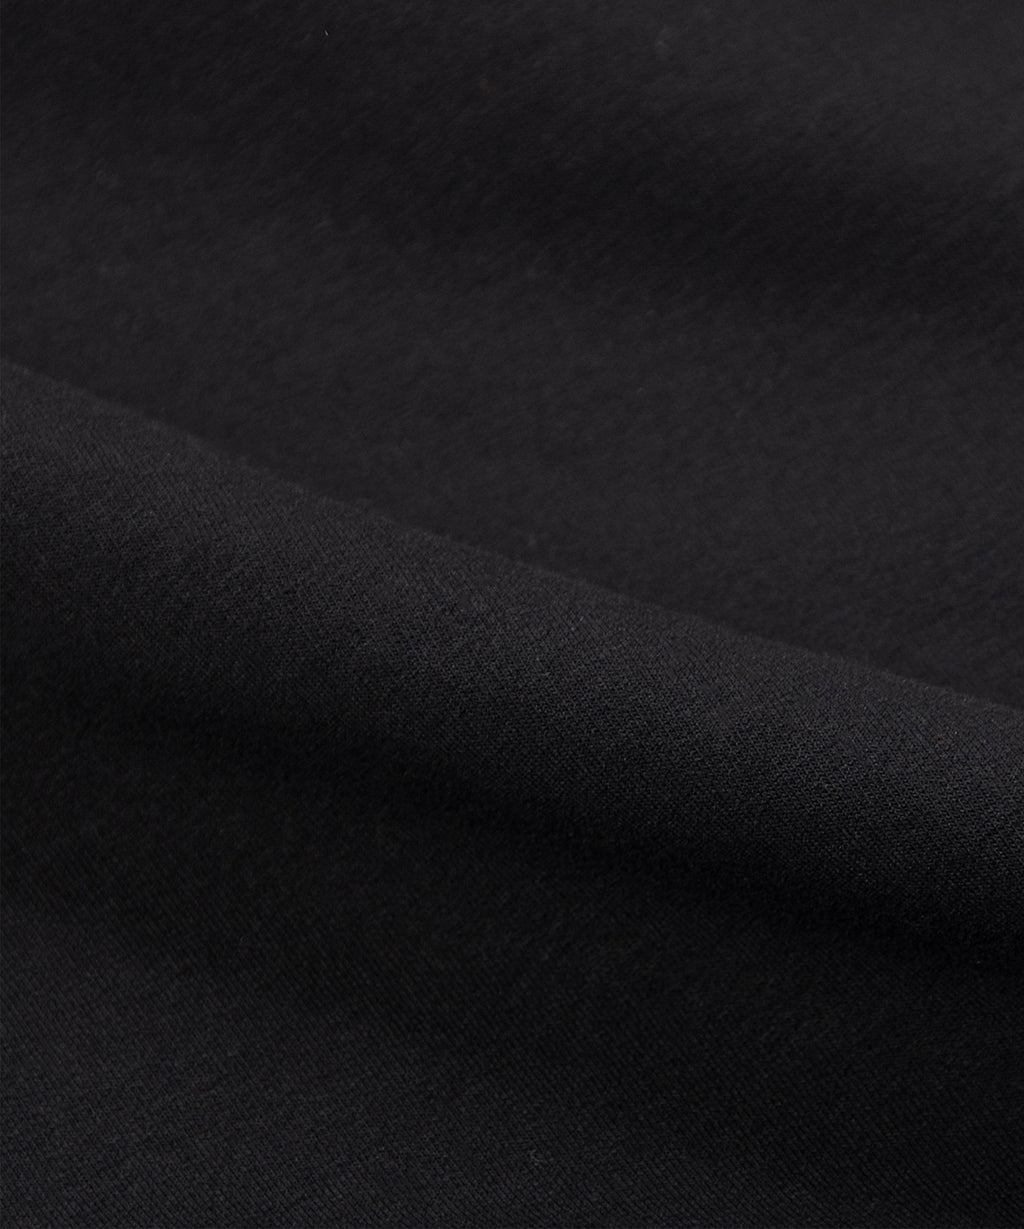  Fabric closeup on Paper Planes Slim Fit Sweatpant, color Black.